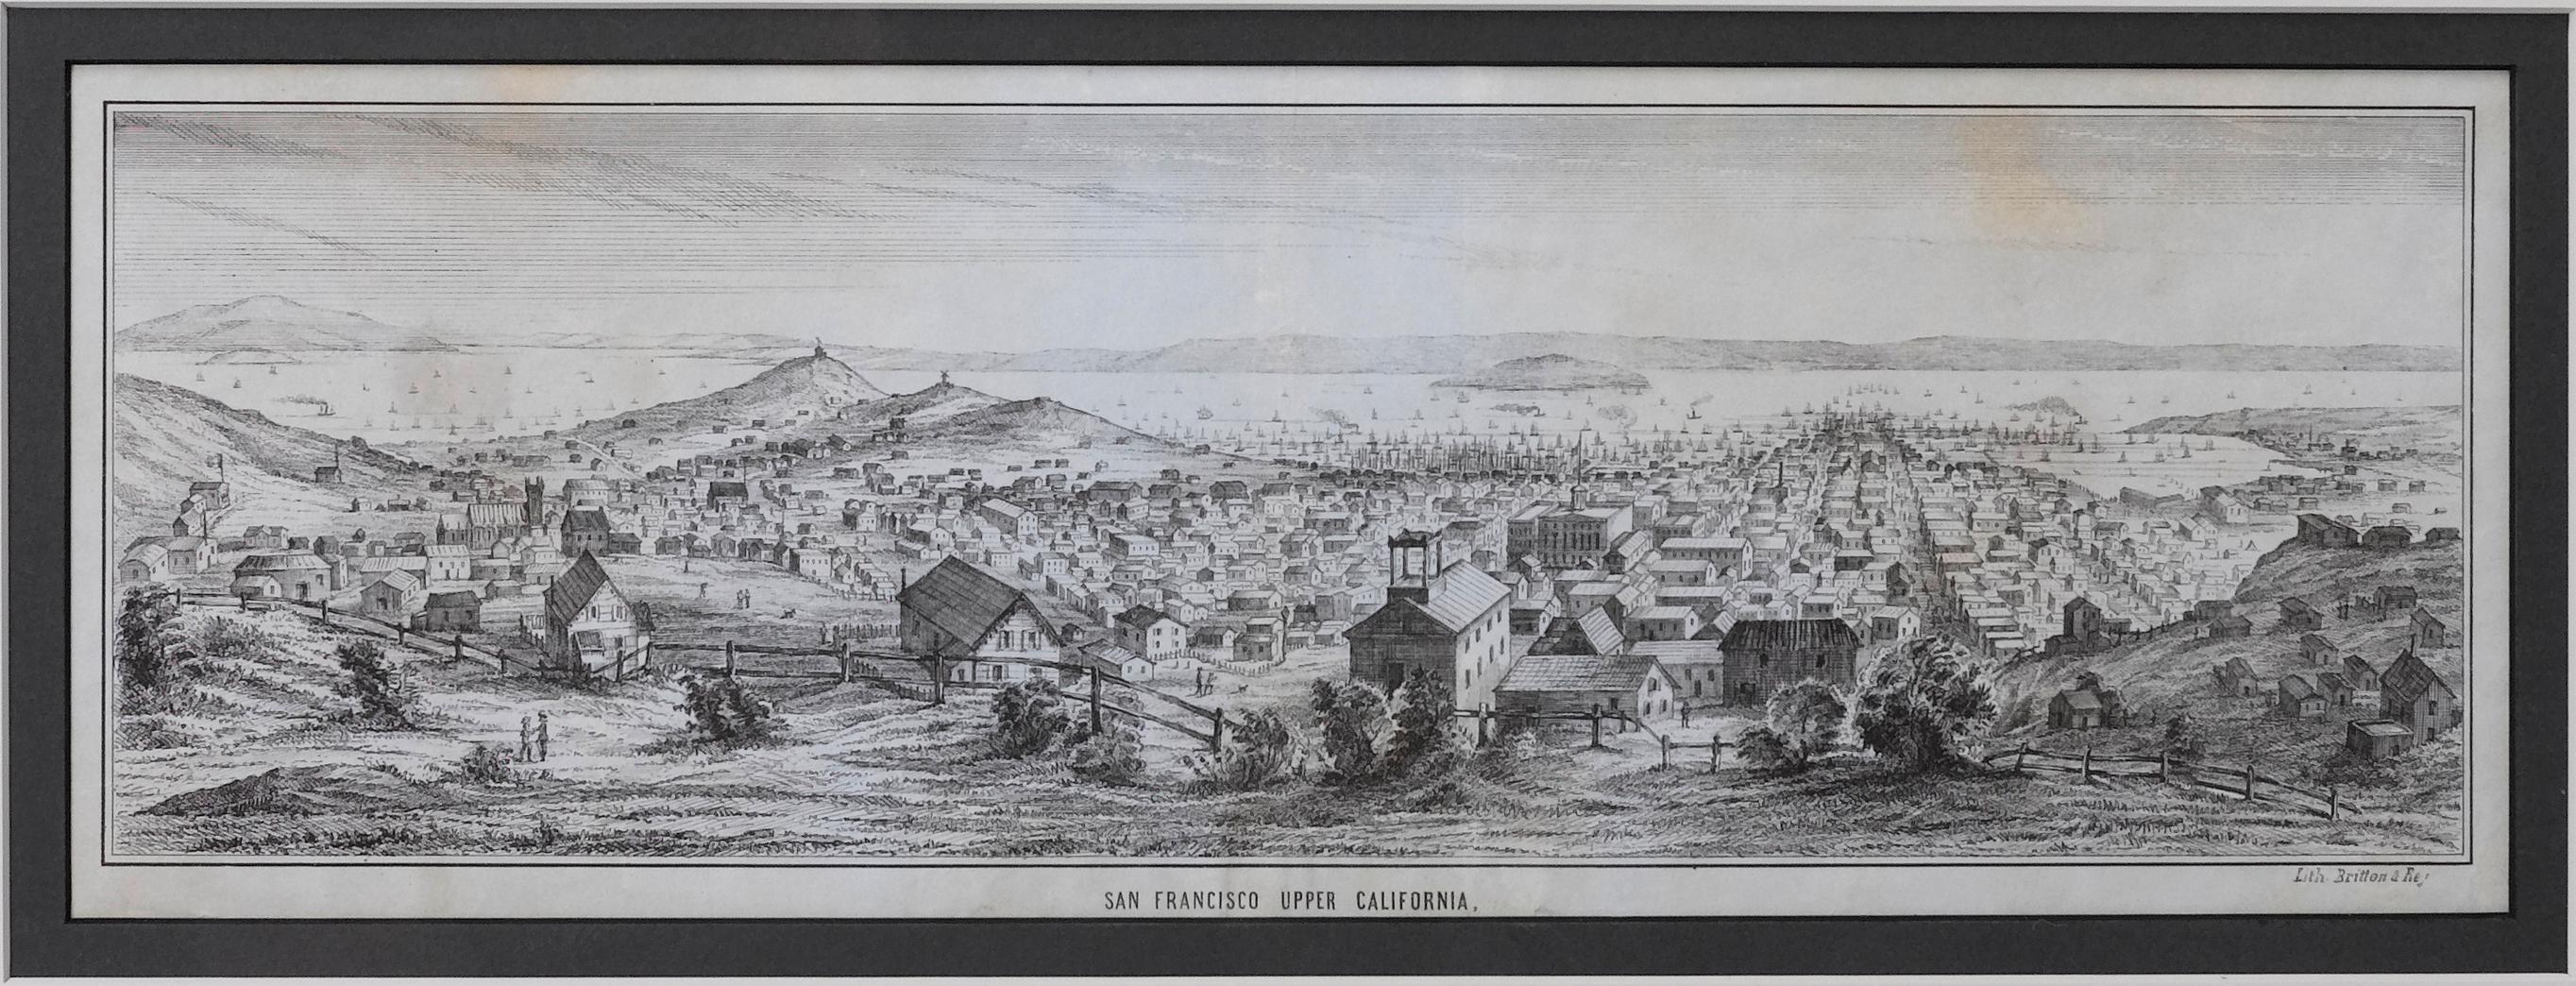 Dies ist eine malerische Briefbogenansicht der Stadt und des Hafens von San Francisco. Diese Lithografie wurde 1851 von den berühmten Lithografen Britton & Rey auf grauem Velin gedruckt, und zwar auf einem Doppelbogen.

Das Bild zeigt eine Ansicht